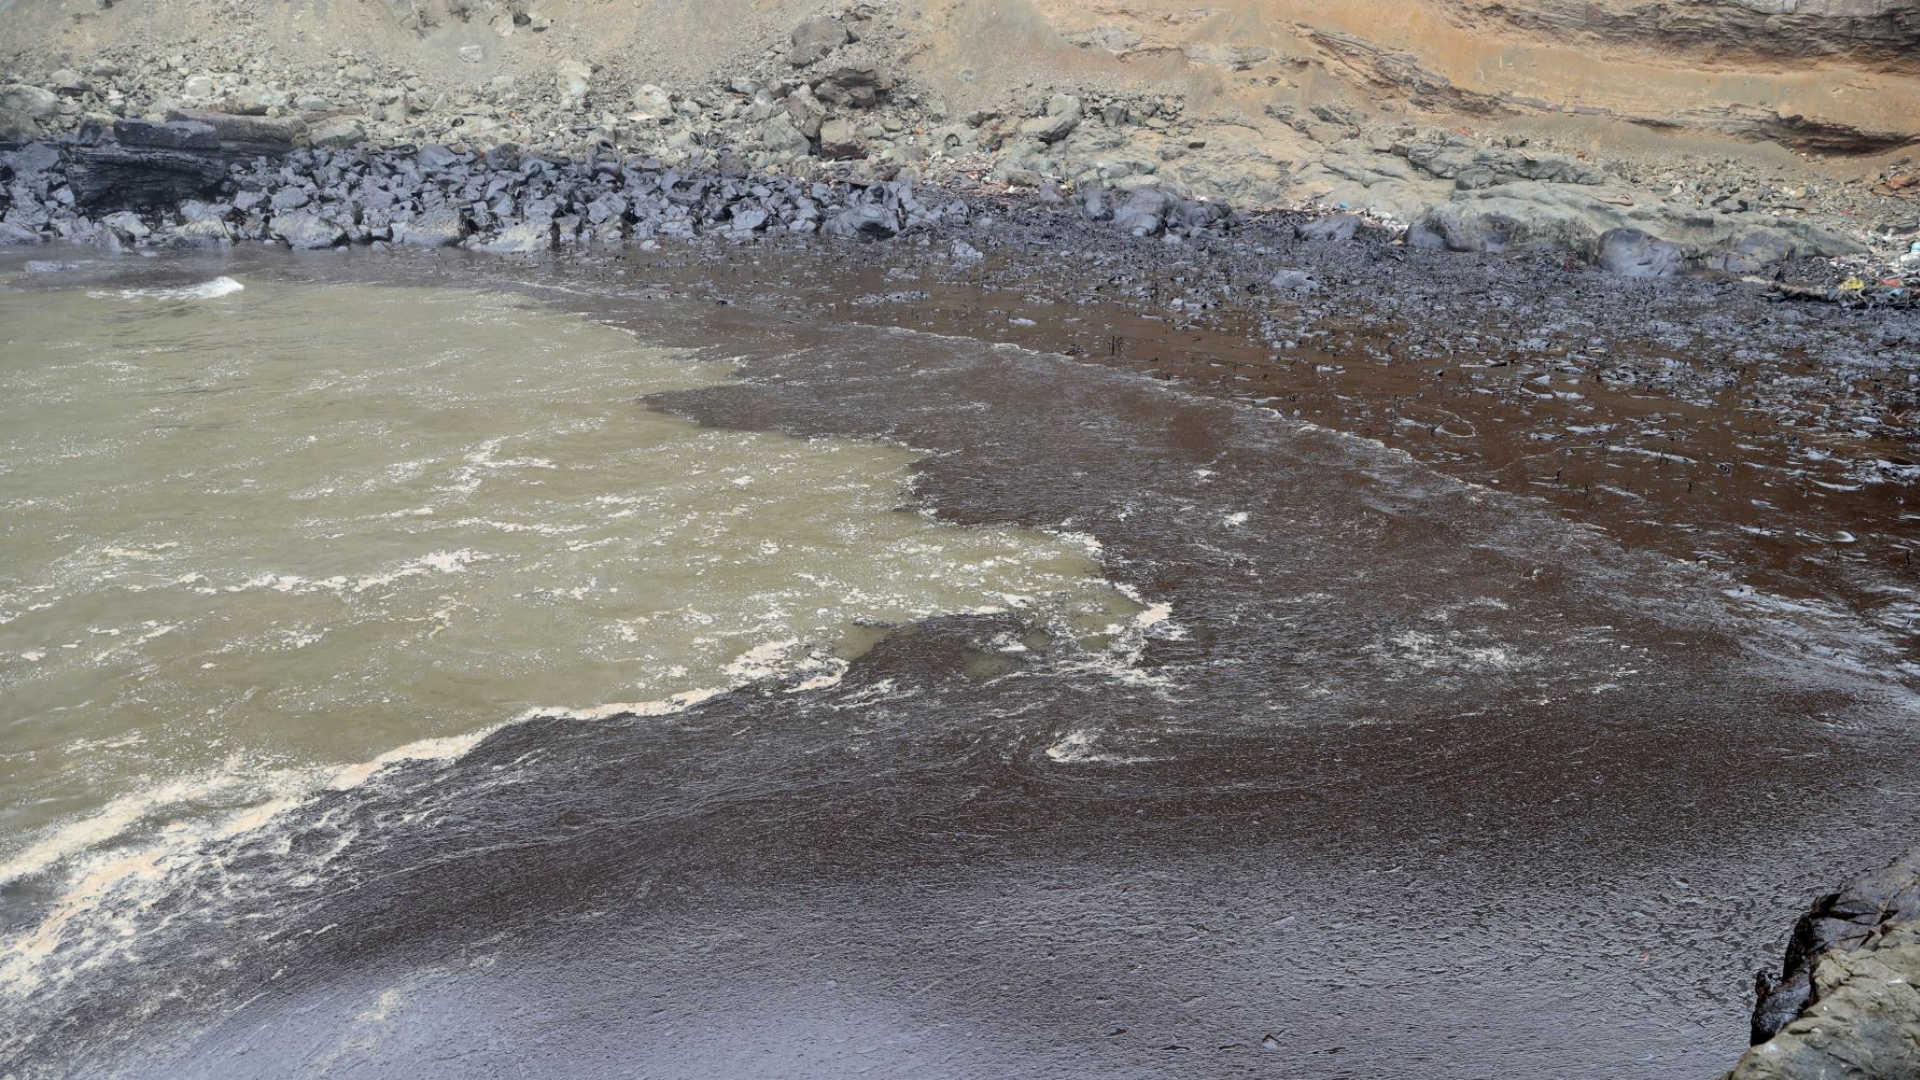 Son 19 las playas que siguen contaminadas por el derrame de petróleo en Ventanilla